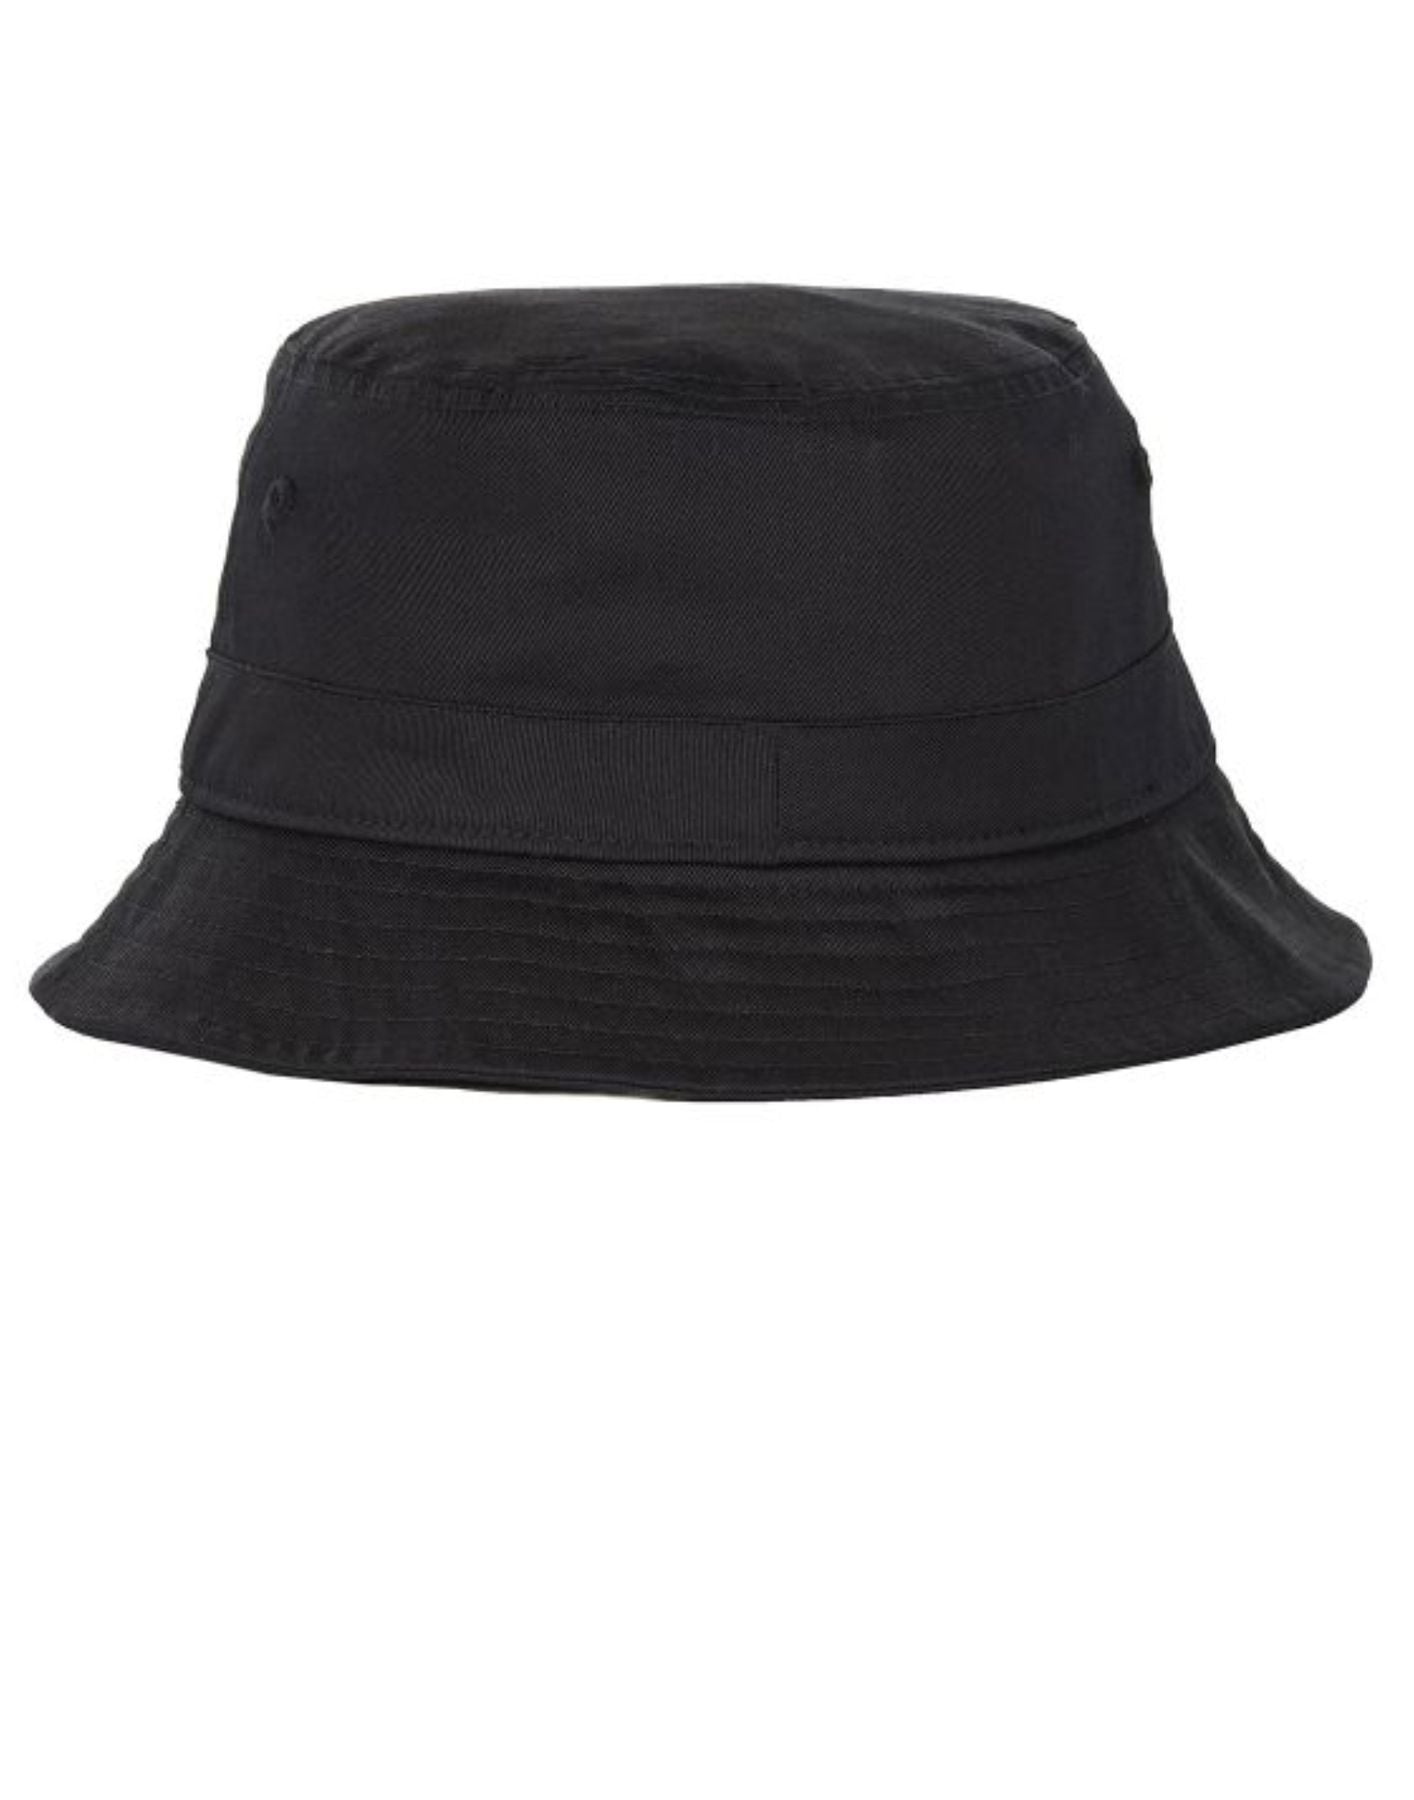 Hat for man MHA0687BK11 BARBOUR INTERNATIONAL